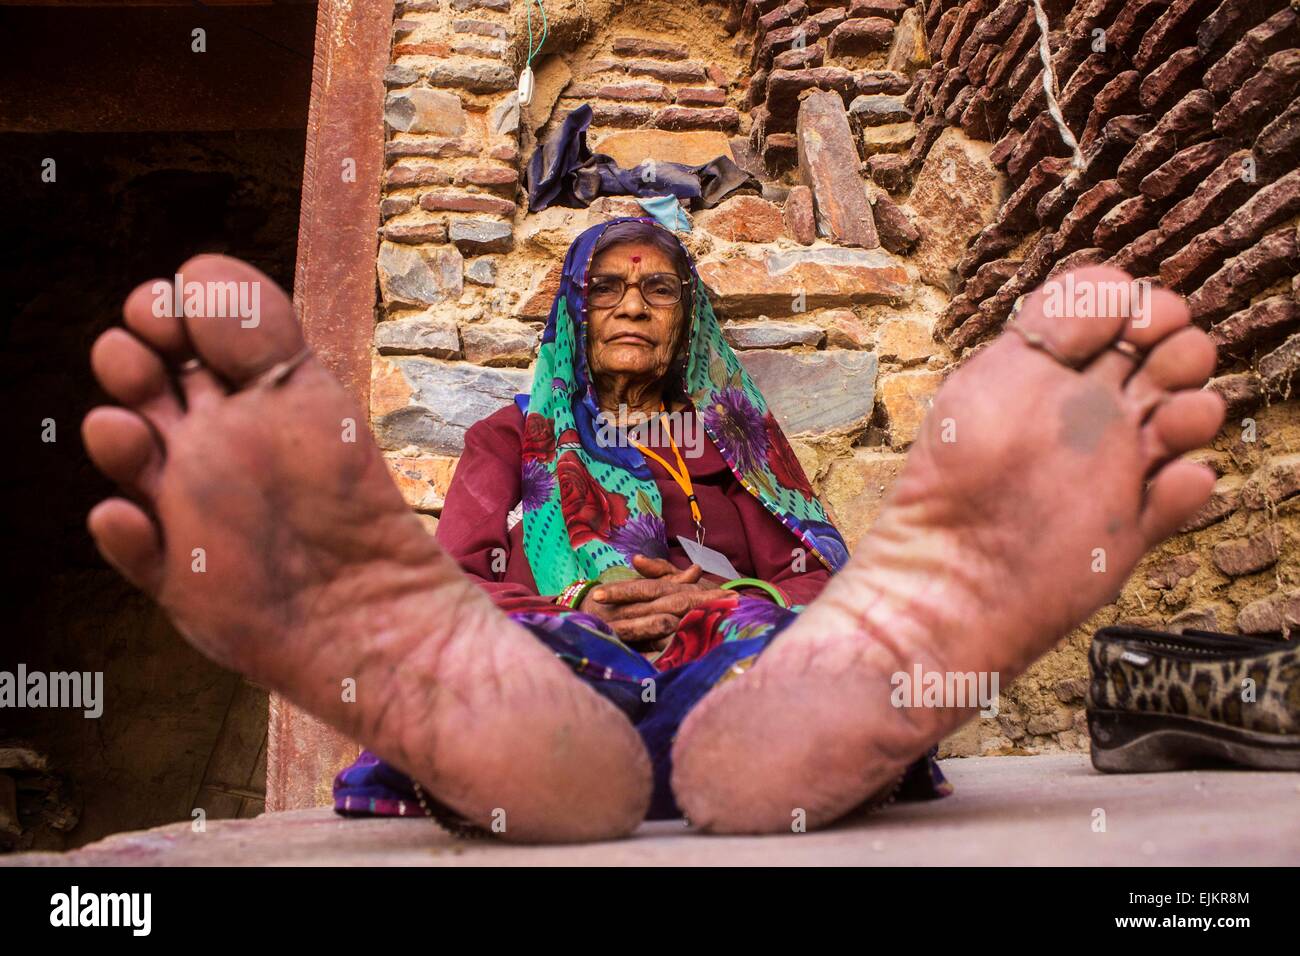 Popolo Indiano celebrare Lathmar Holi erano il bastone è nelle mani delle donne in questo giorno e gli uomini hanno bisogno di un sacco di lavoro per salvare se stessi dal immensamente caricato womenfolk. Foto Stock